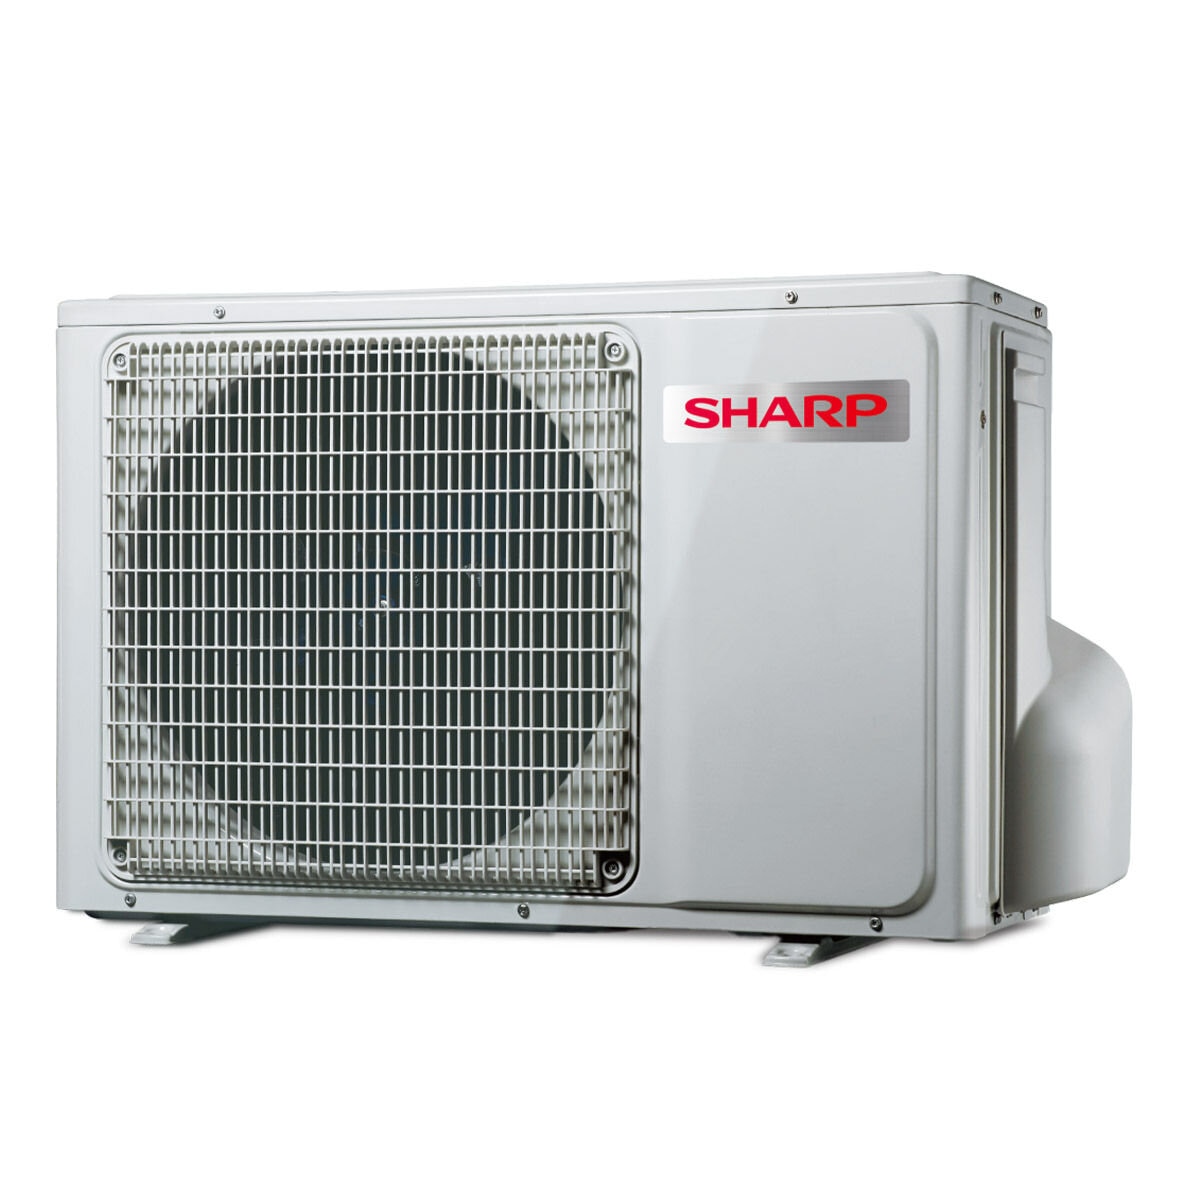 夏普 6 - 8坪 5.0kW 變頻冷暖一對一分離式冷氣 含運費及基本安裝